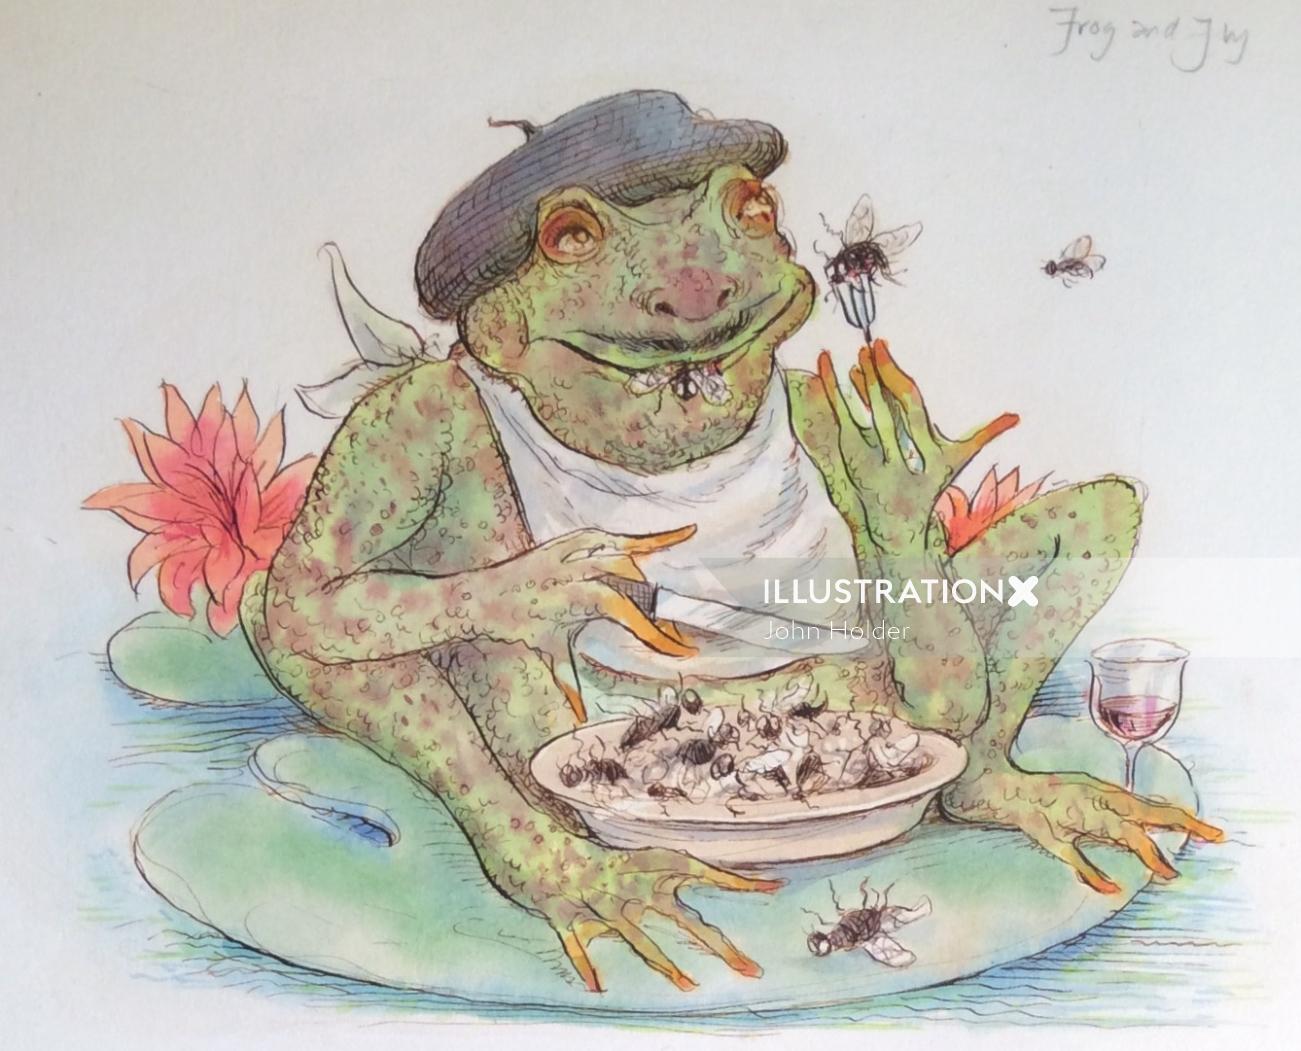 Cartoon & Humour frog having food